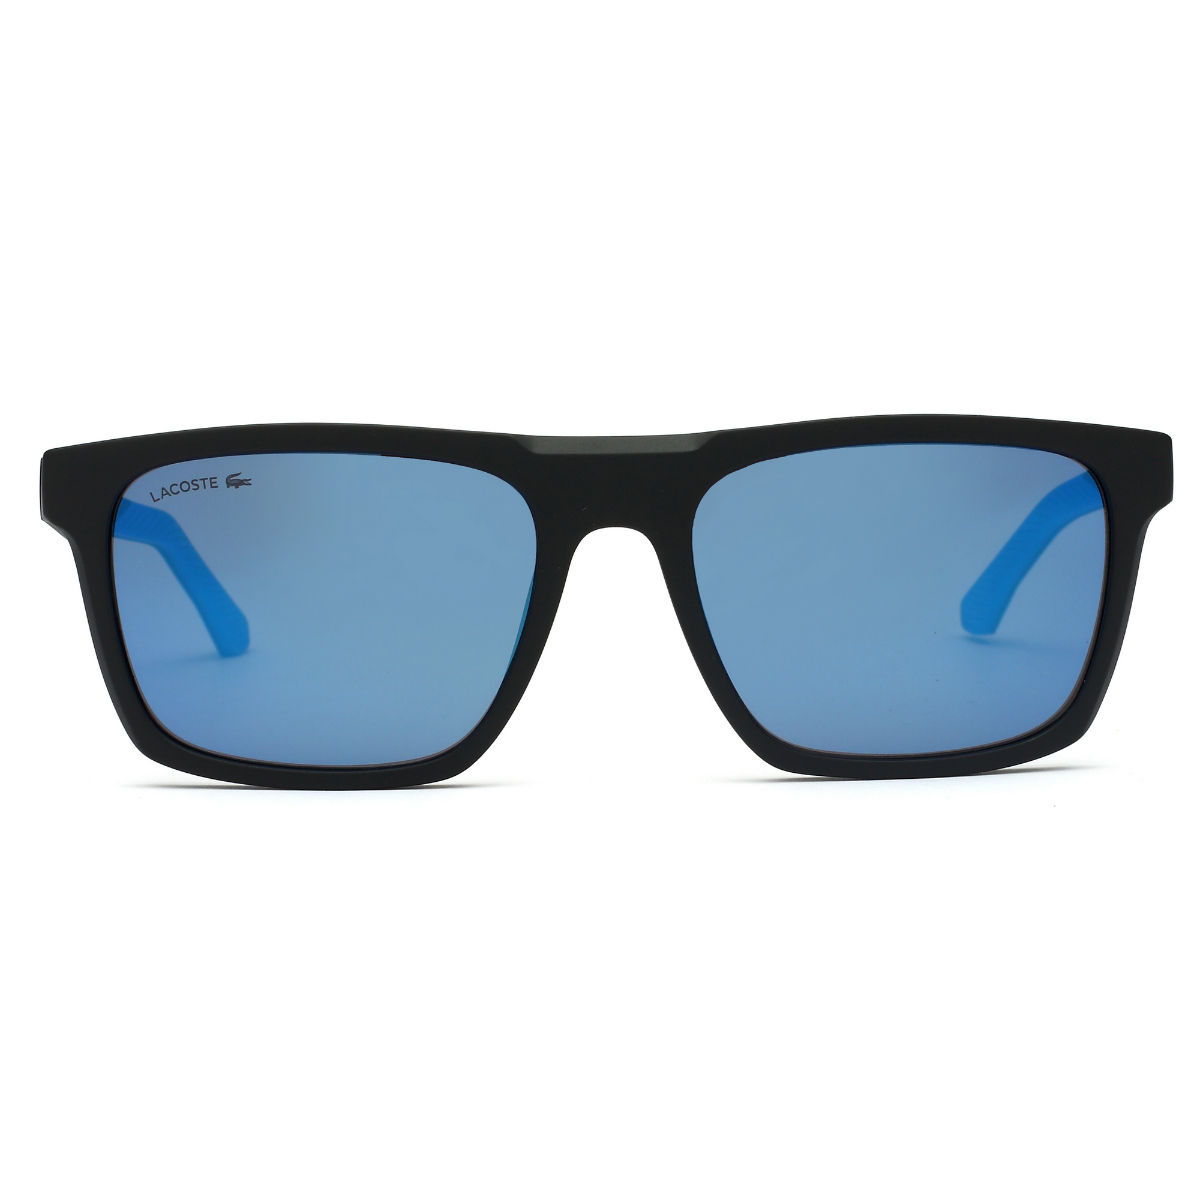 Lacoste Women's Sunglasses - Full Rim Blue/White Plastic Rectangular |